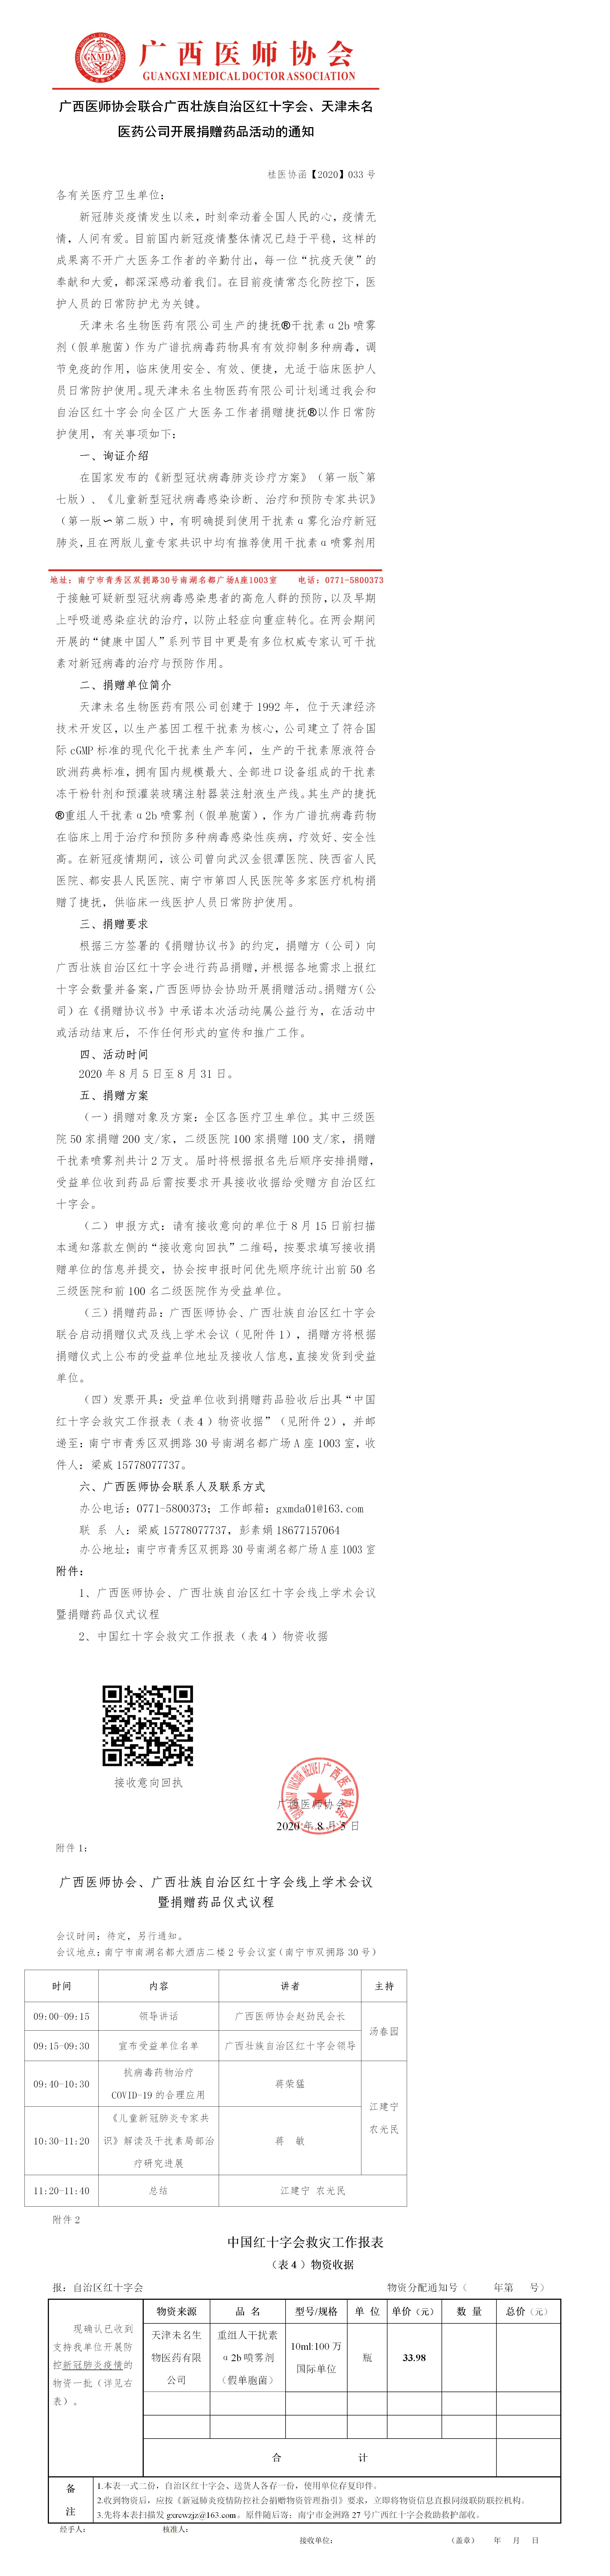 【2020】033号 广西医师协会联合广西红十字会、天津未名医药公司开展捐赠药品活动的通知-已审核20200804(1).jpg